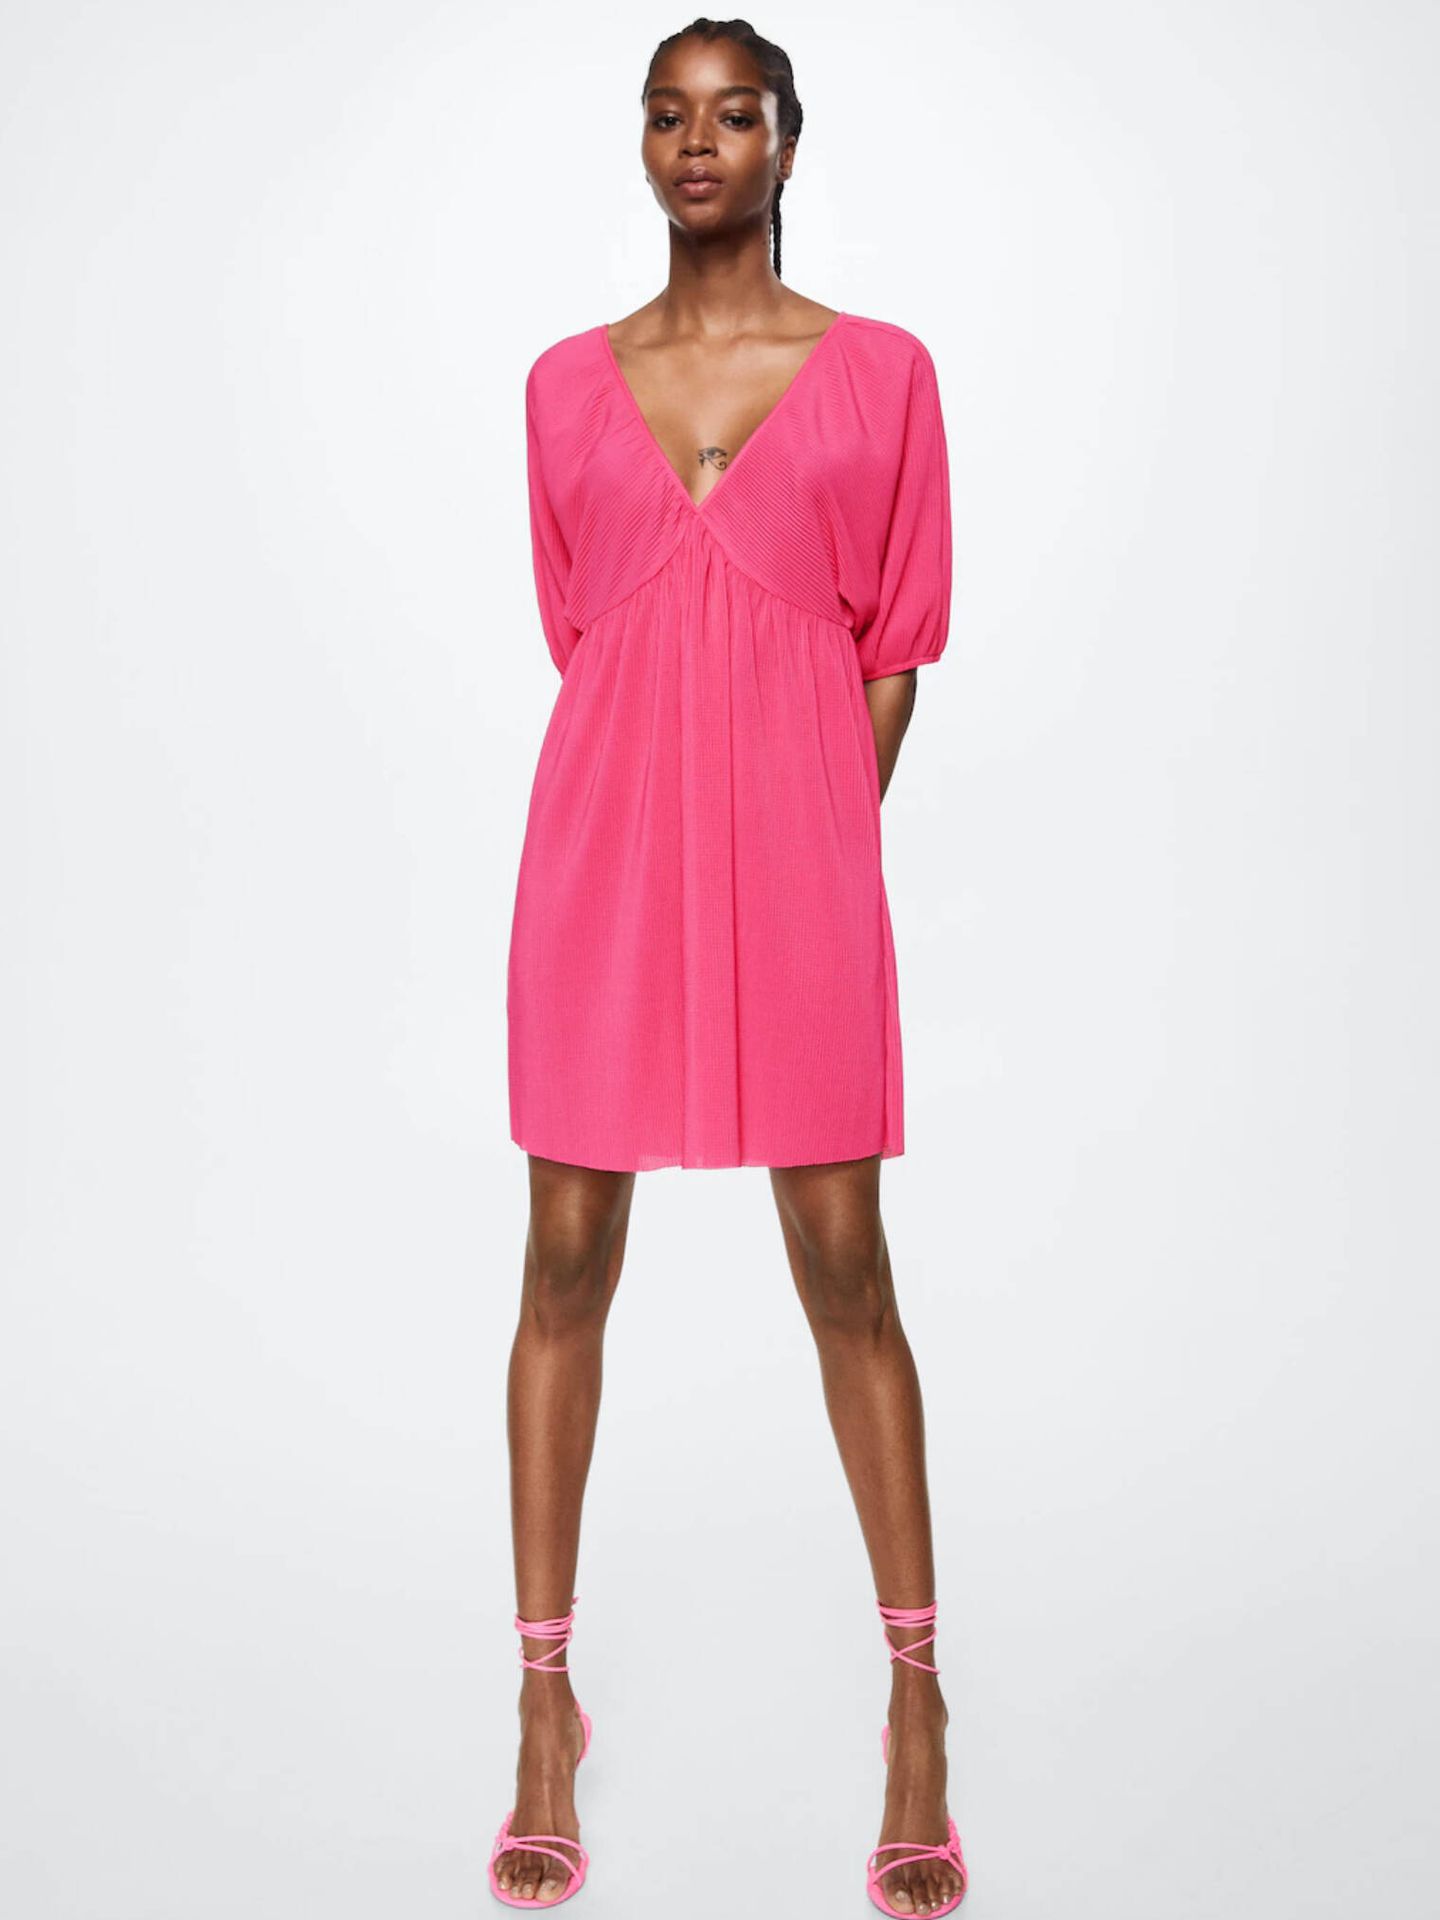 Vestido rosa corto de escote pico de Mango. (Cortesía)